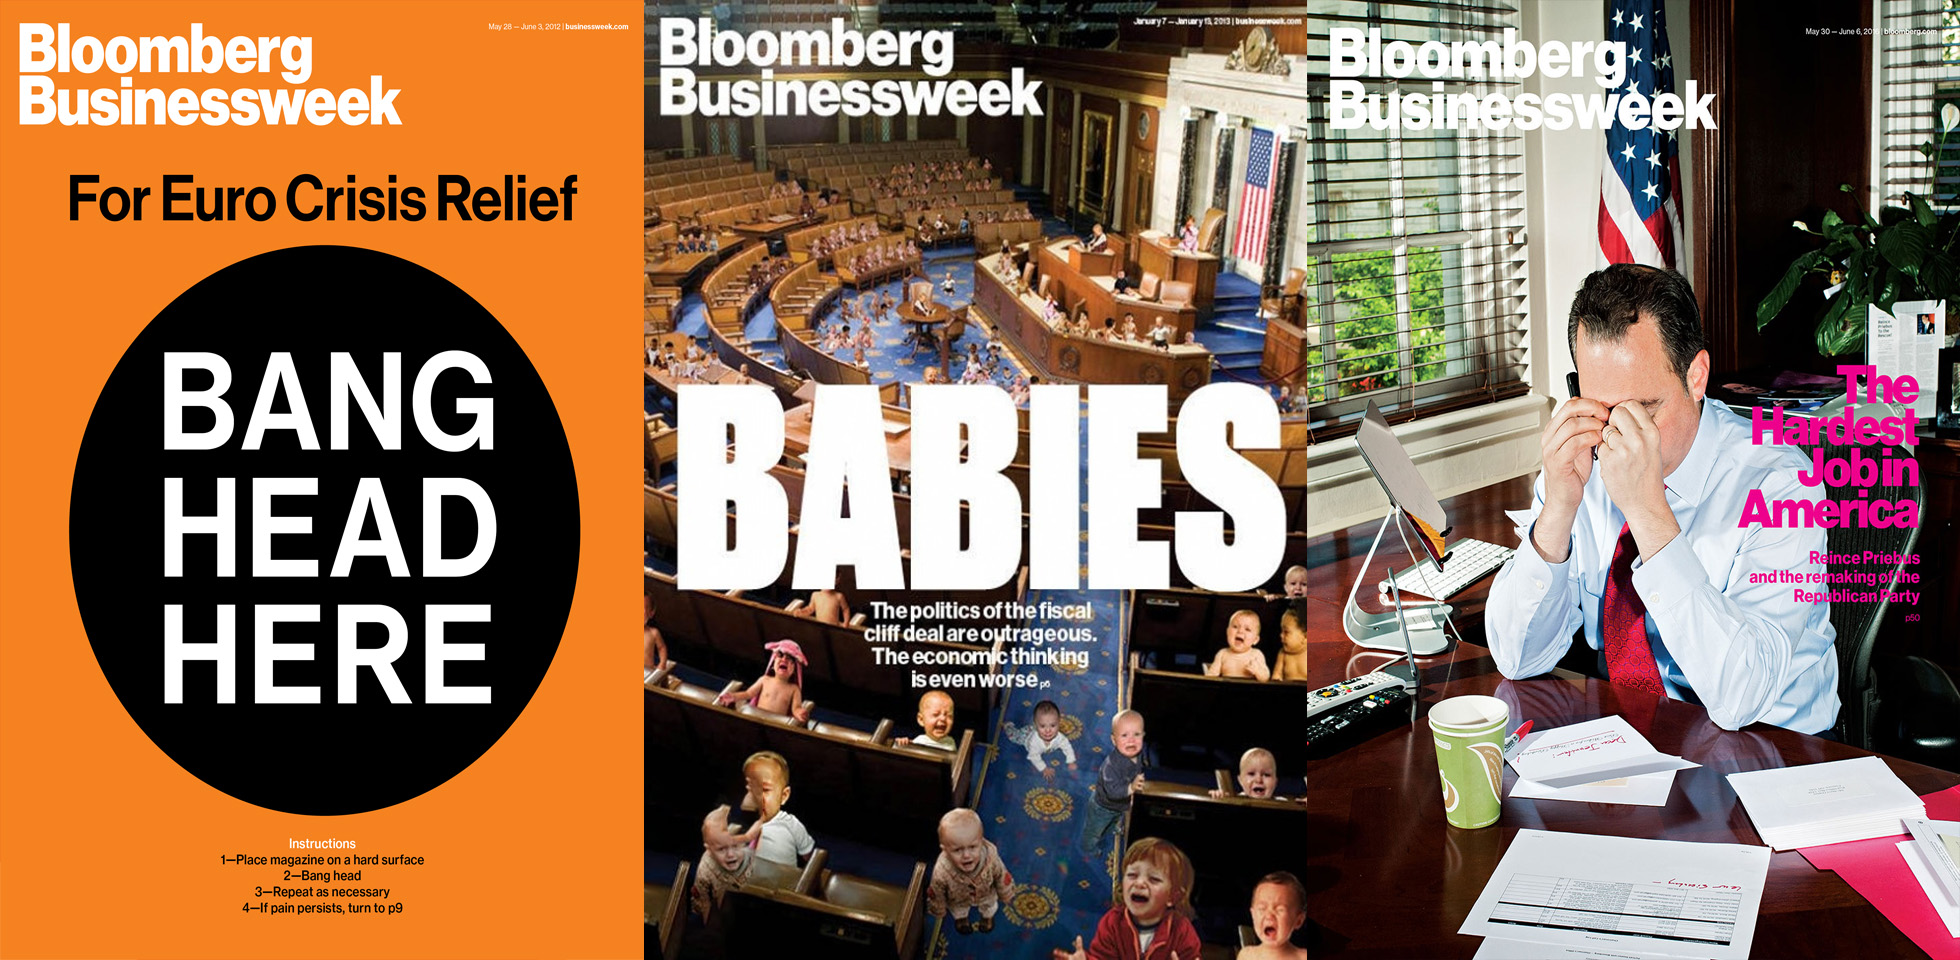 L’art de la couverture selon le Bloomberg Businessweek - Alworld.fr